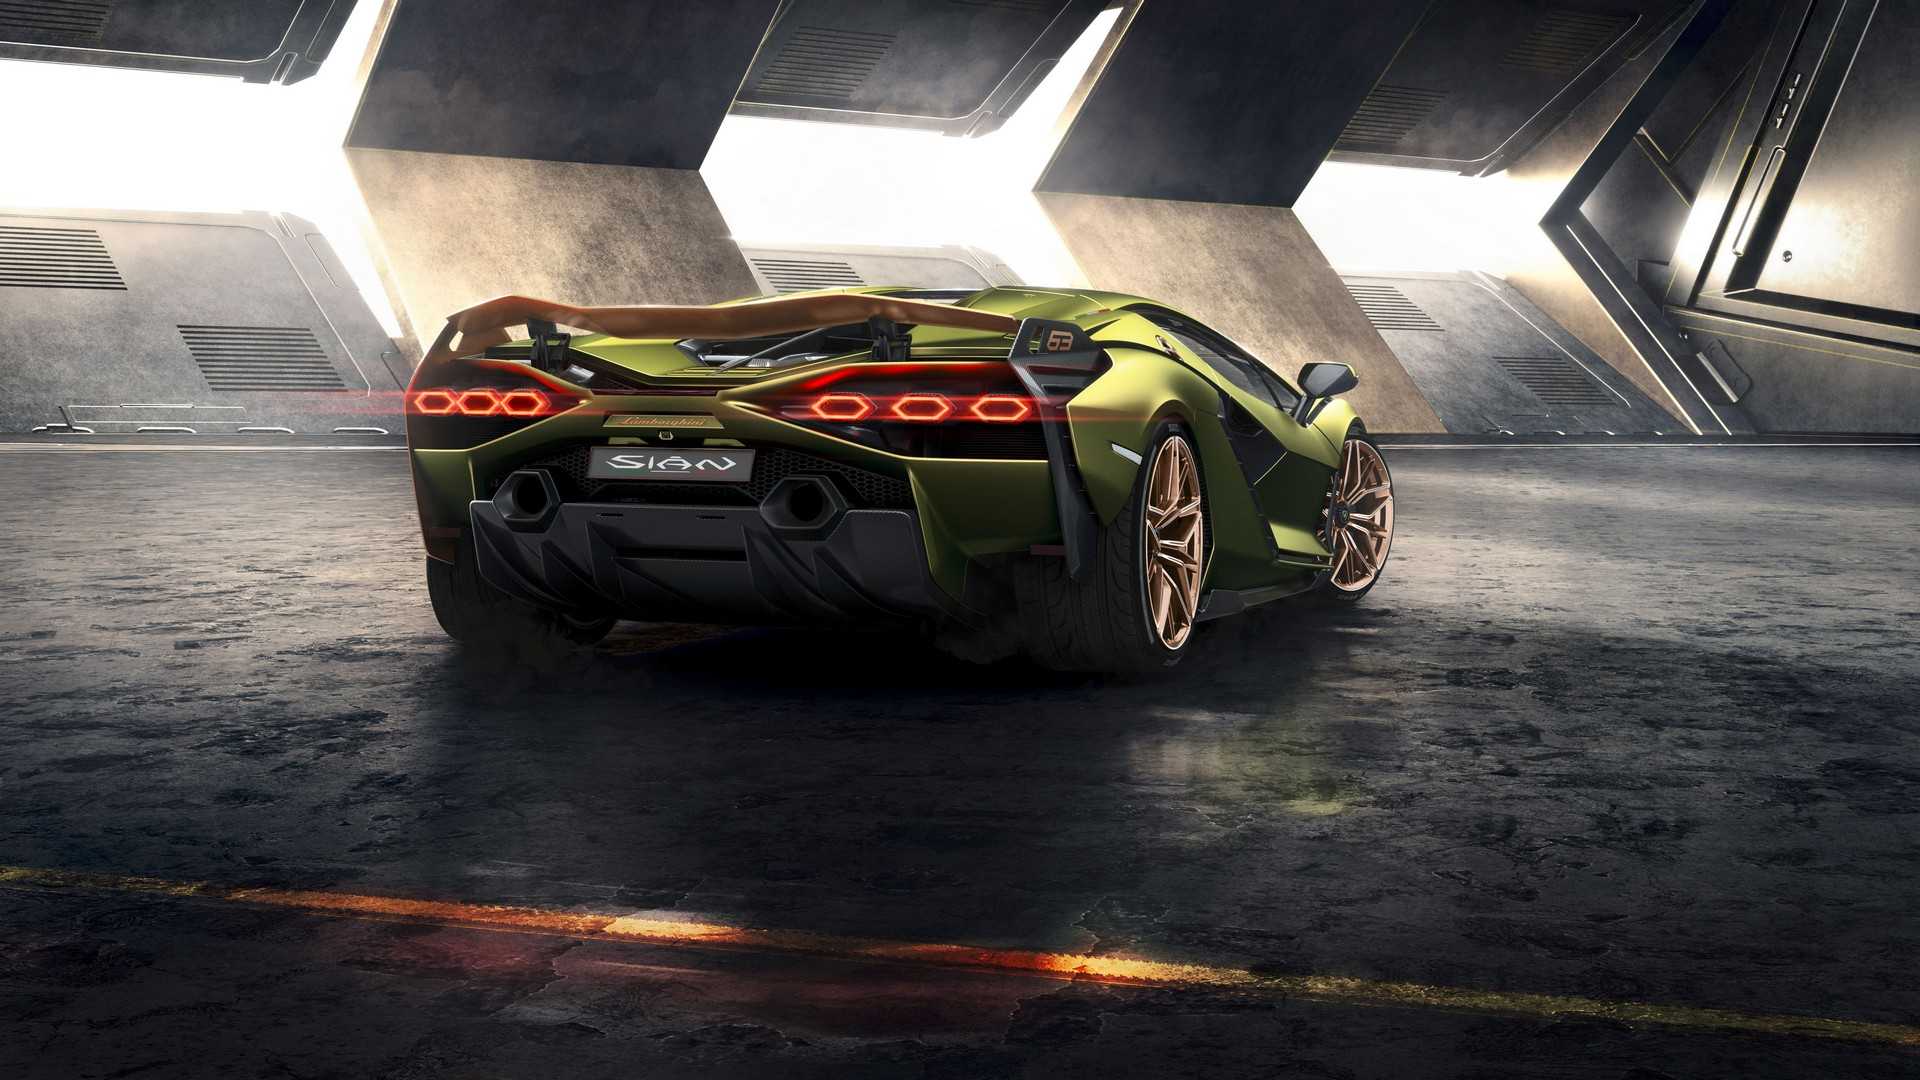 Oficial: Lamborghini Sian, el más potente jamás fabricado, y "casi" híbrido